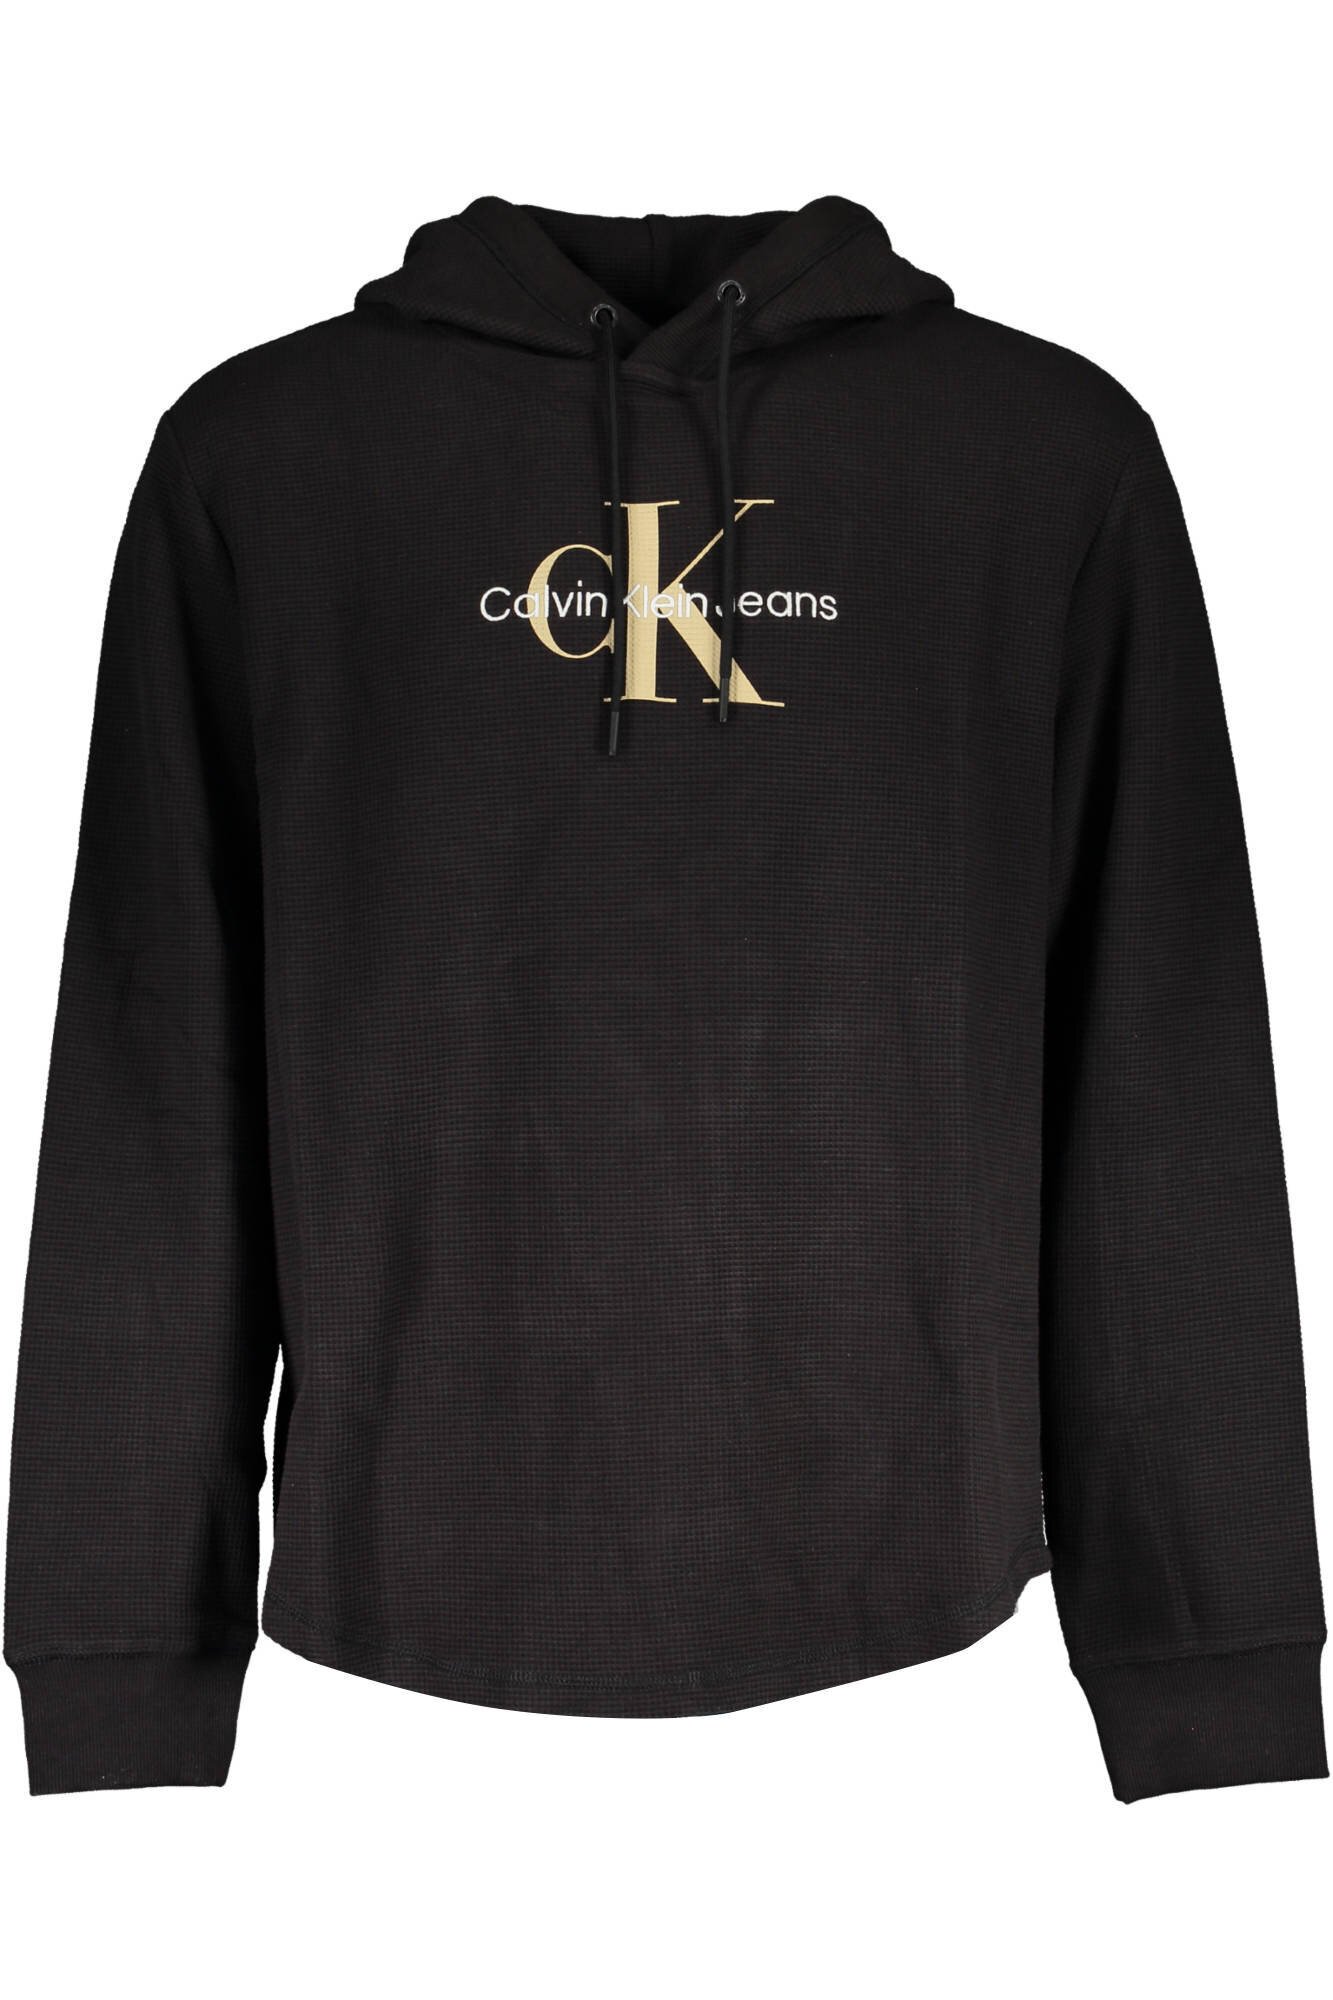 Džemperis vyrams Calvin Klein J30J322701 kaina | pigu.lt